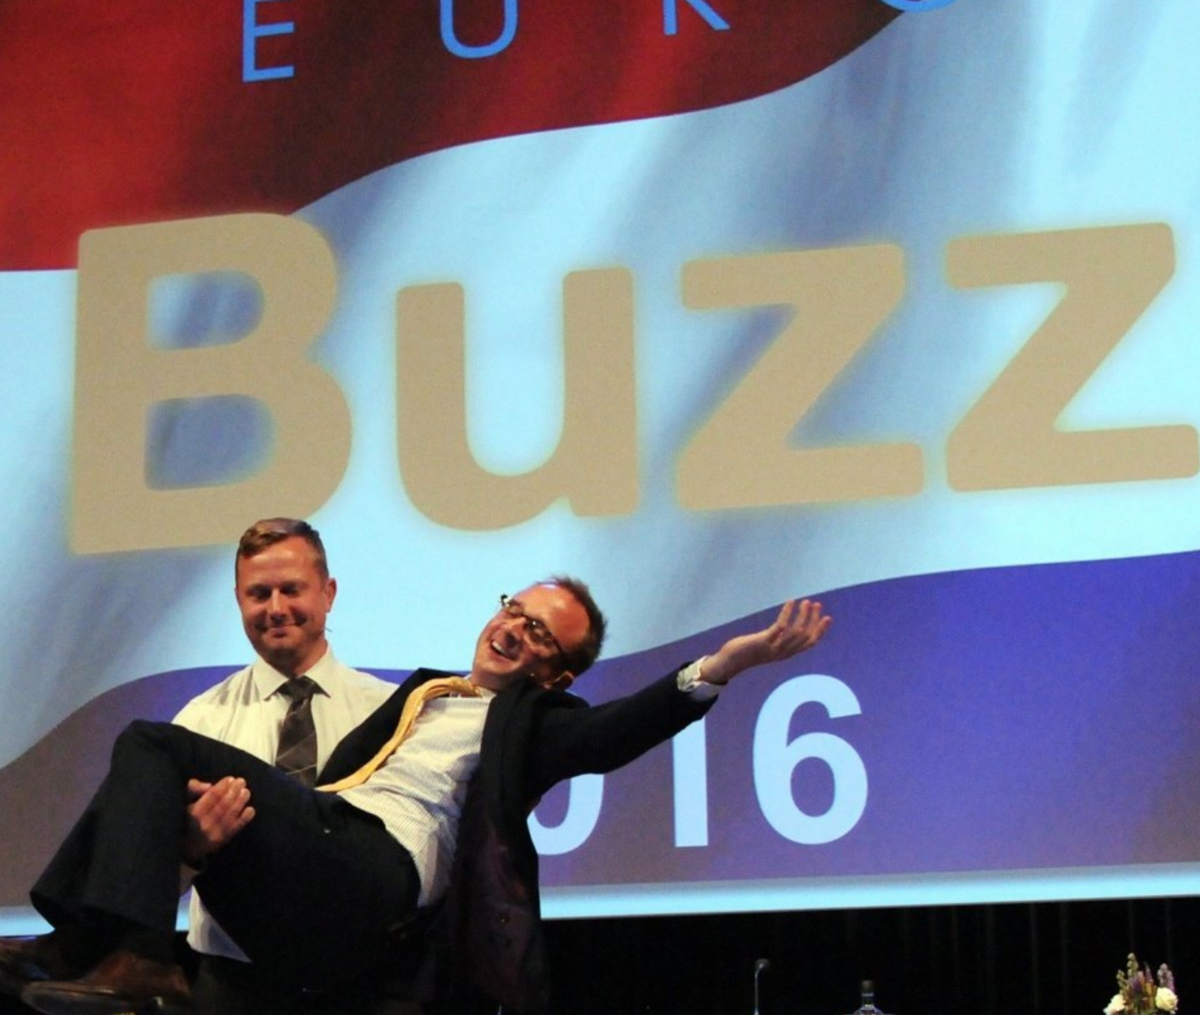 Jeff and Ed zeigten ihre zusammenfassende Bühnenshow, EuroBuzz 2016  